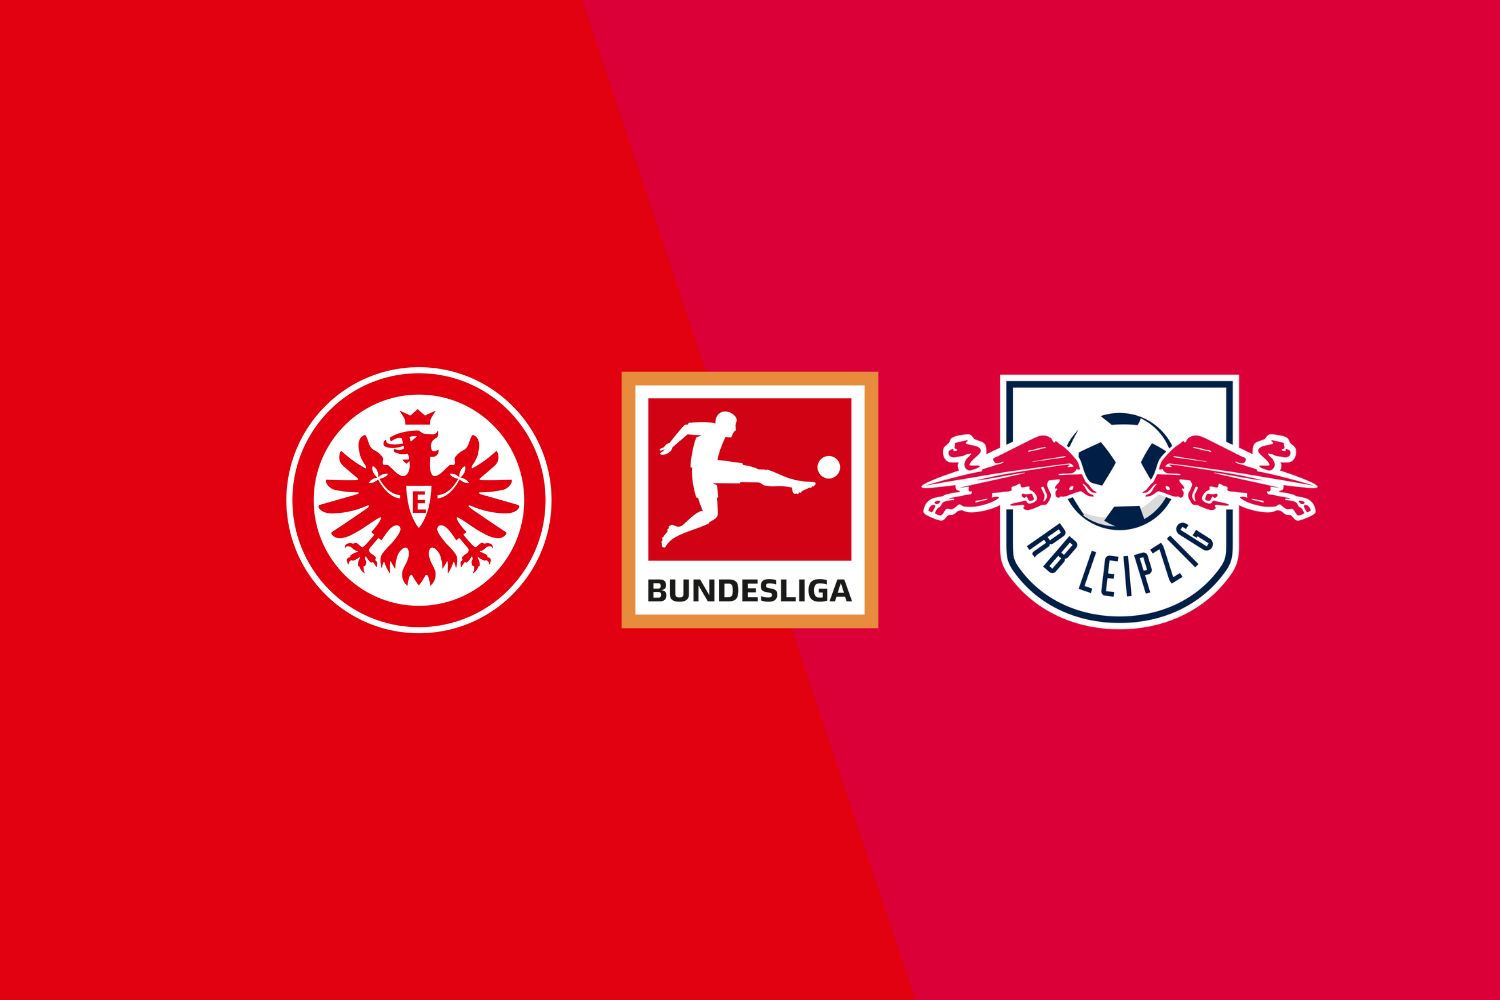 Frankfurt vs Leipzig preview & prediction